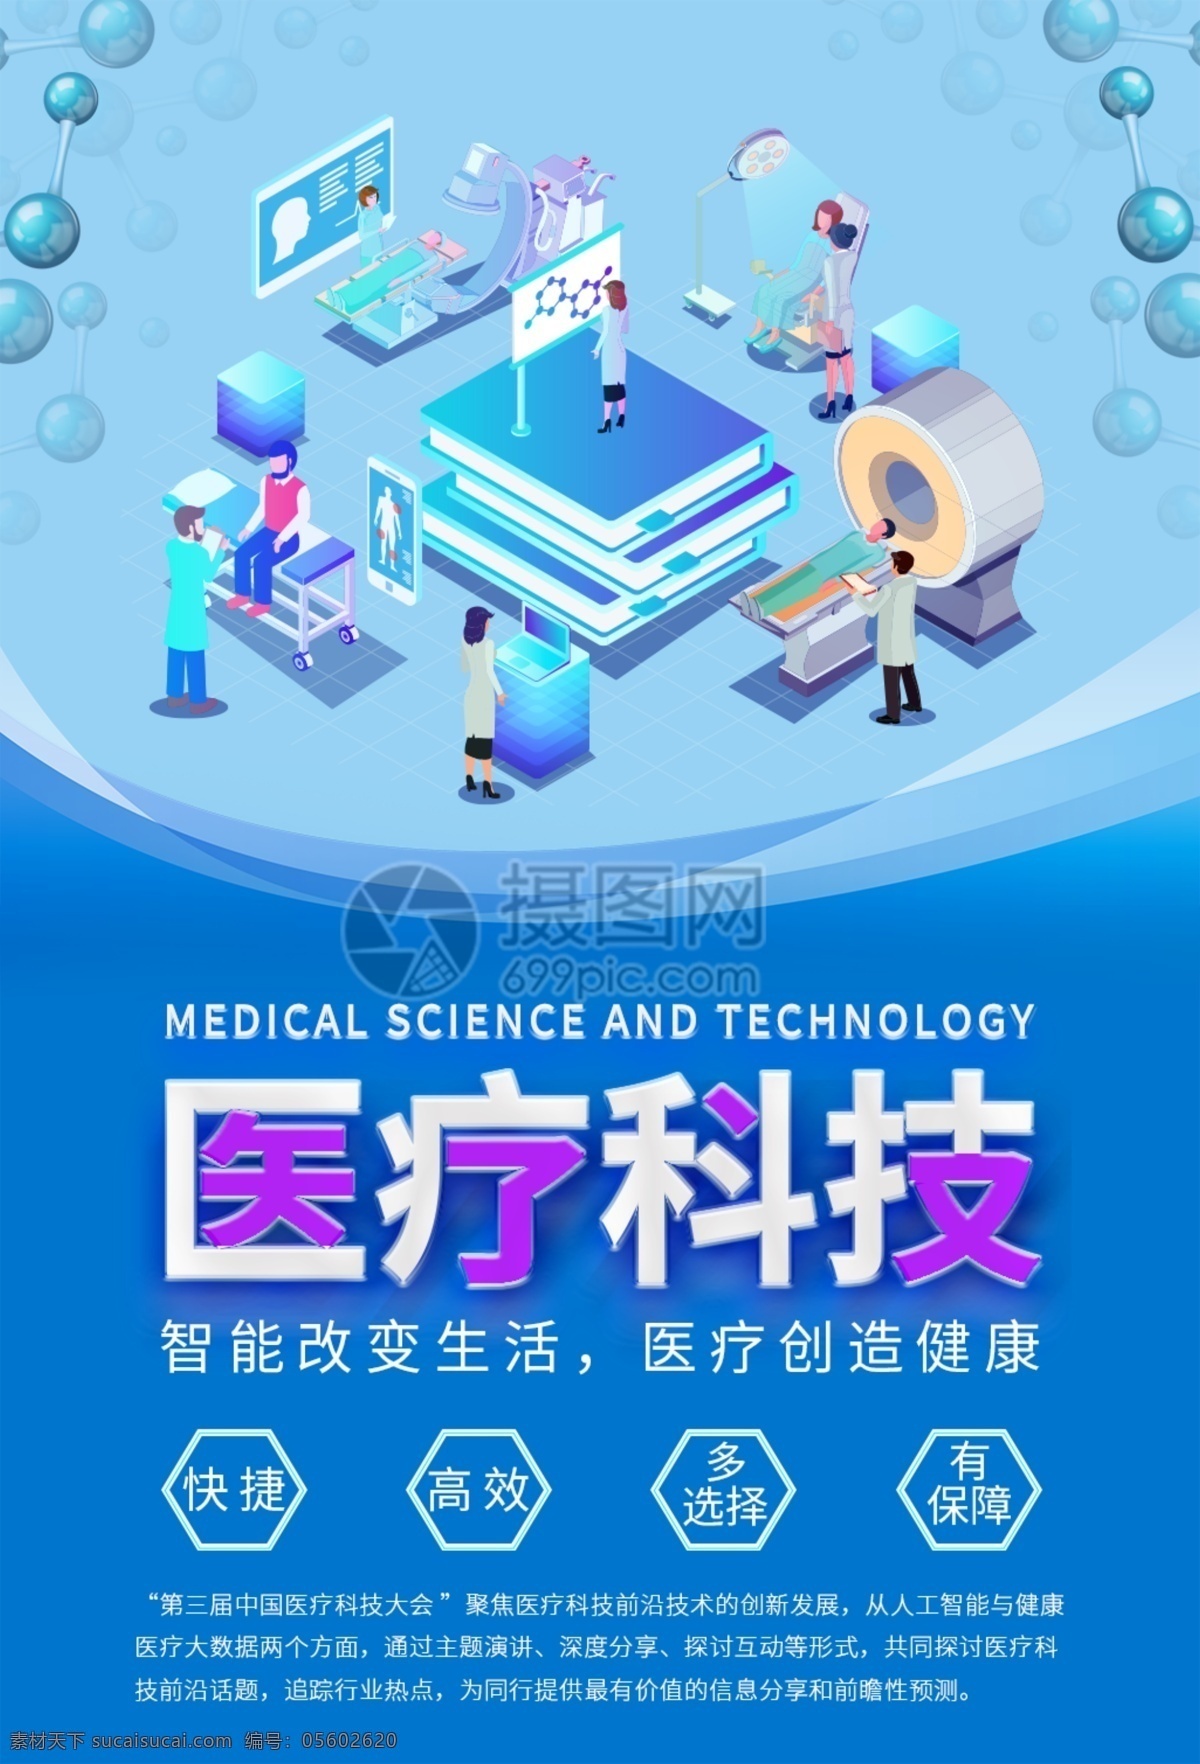 医疗科技海报 医疗科技 2.5d插画 智能 健康 快捷 高效 多选择 有保障 医疗 科技医疗 蓝色医疗海报